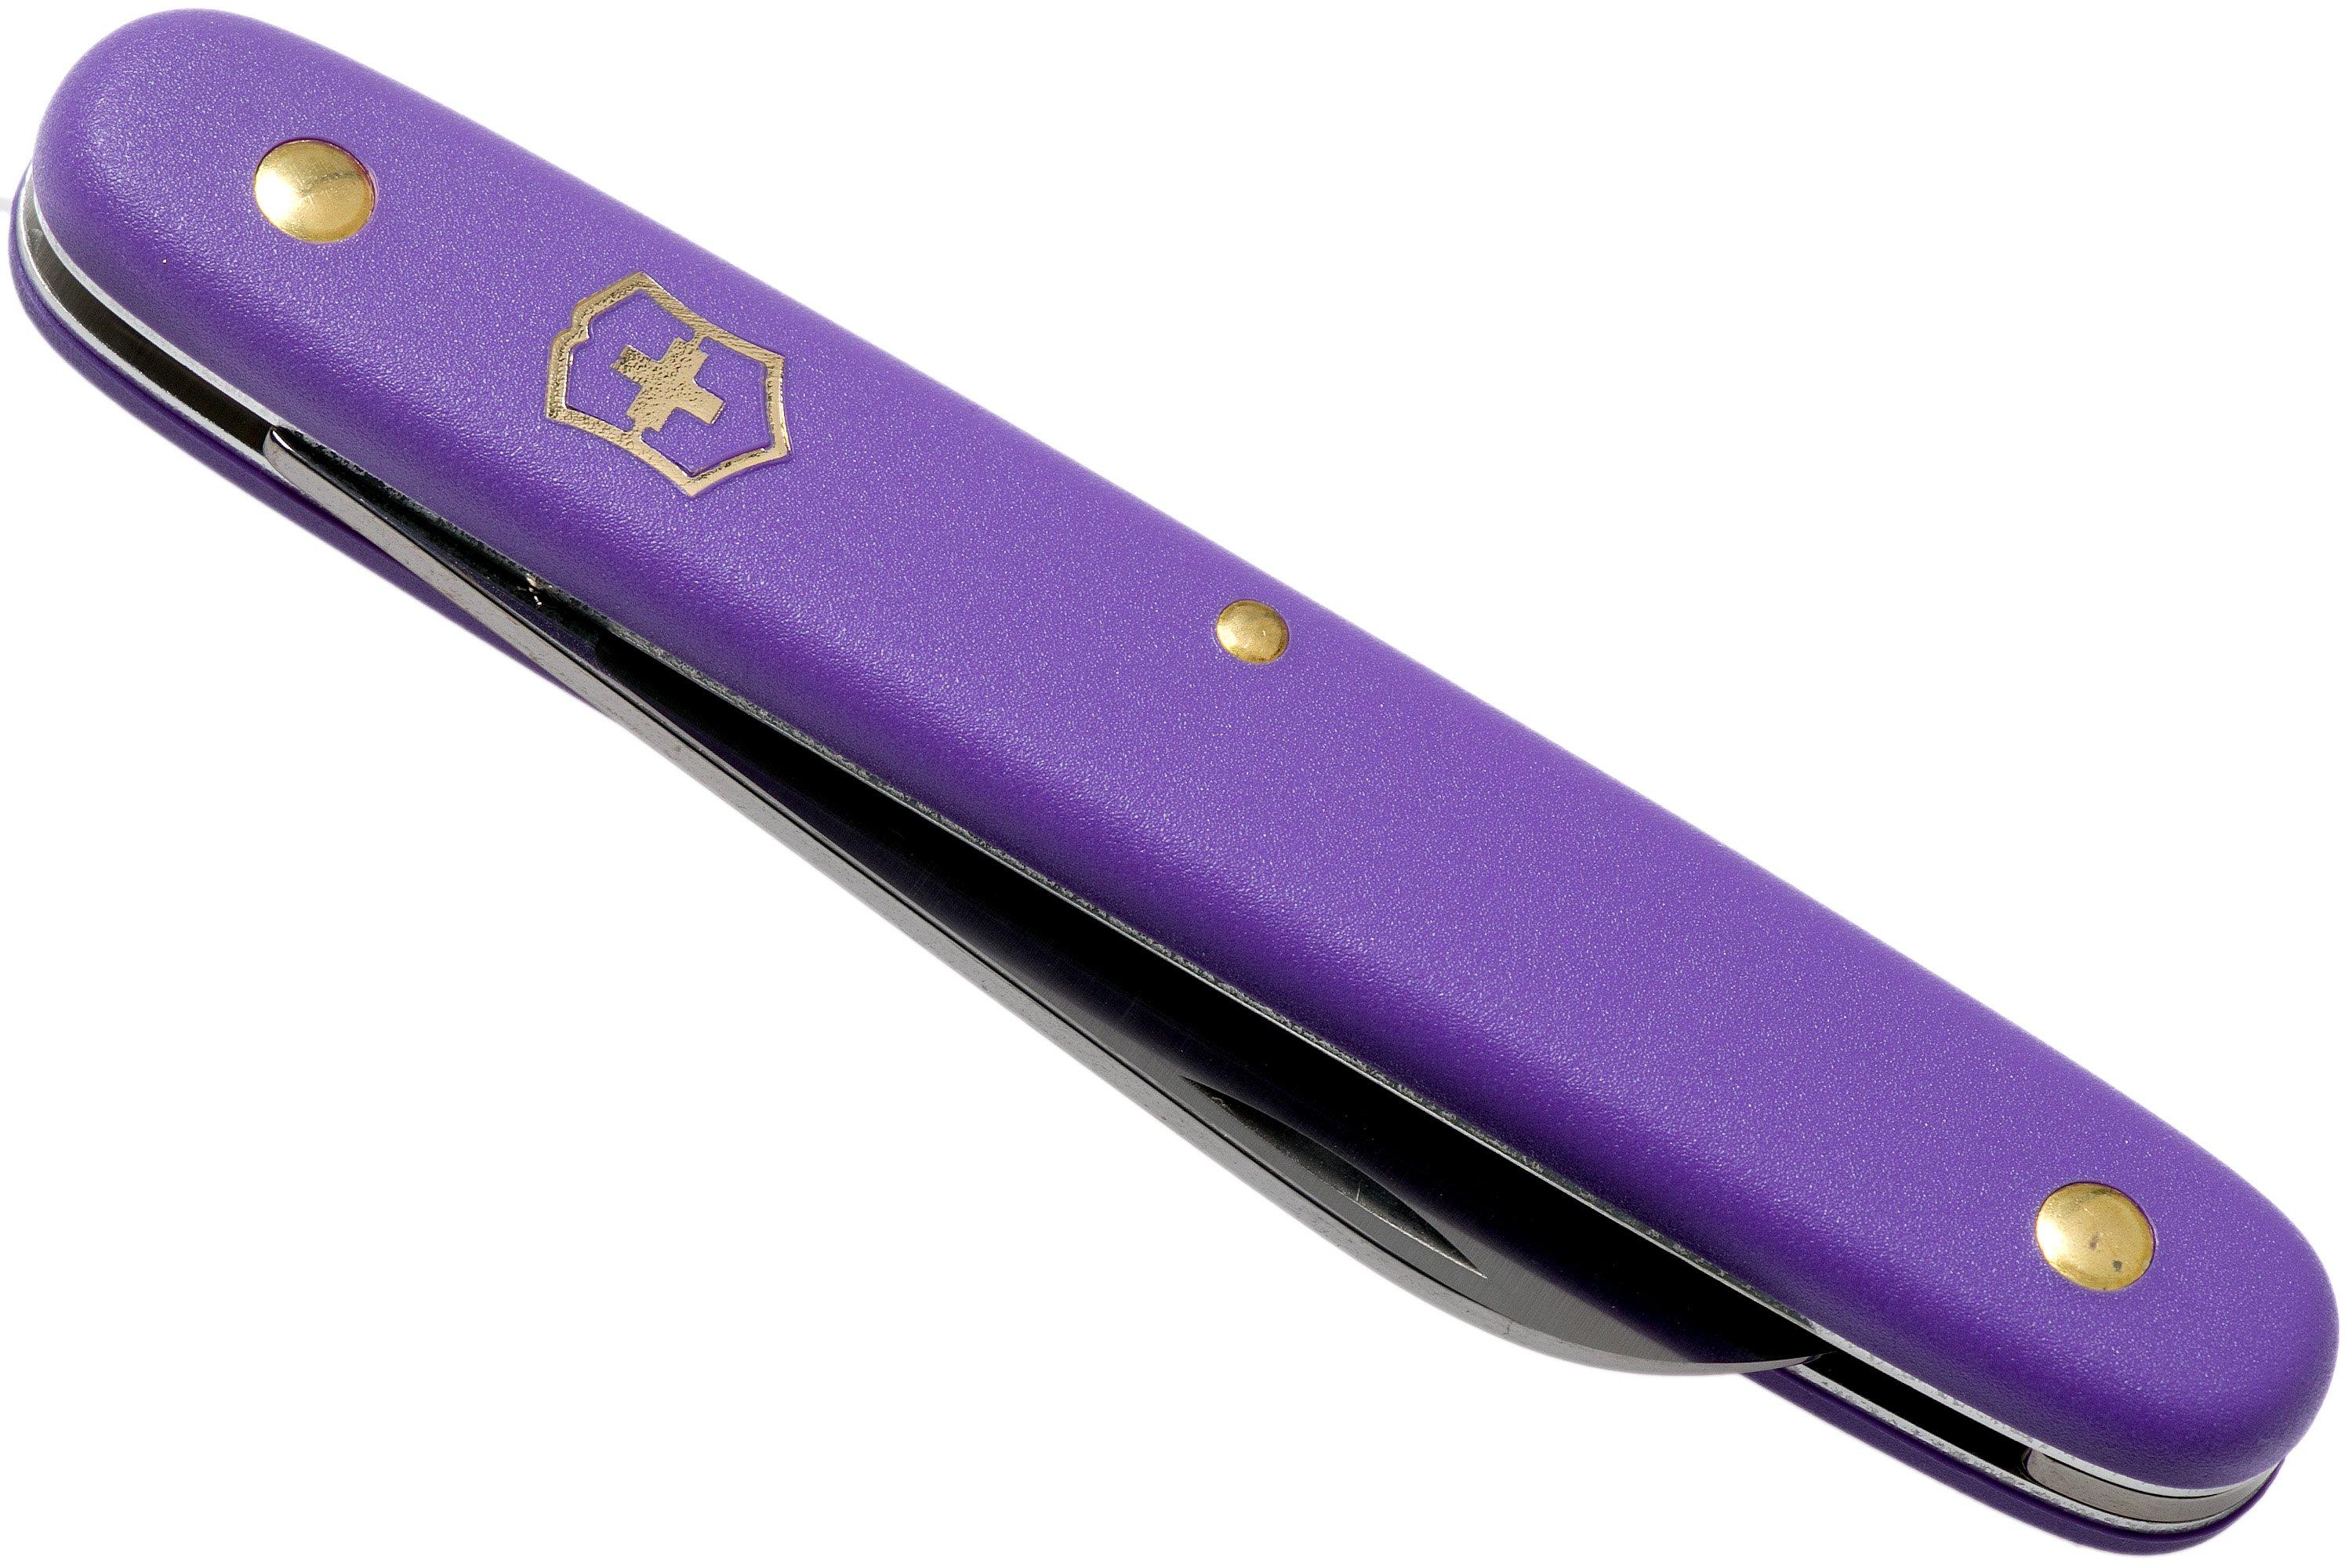 Victorinox Floral knife 3.9050.22B1 violet